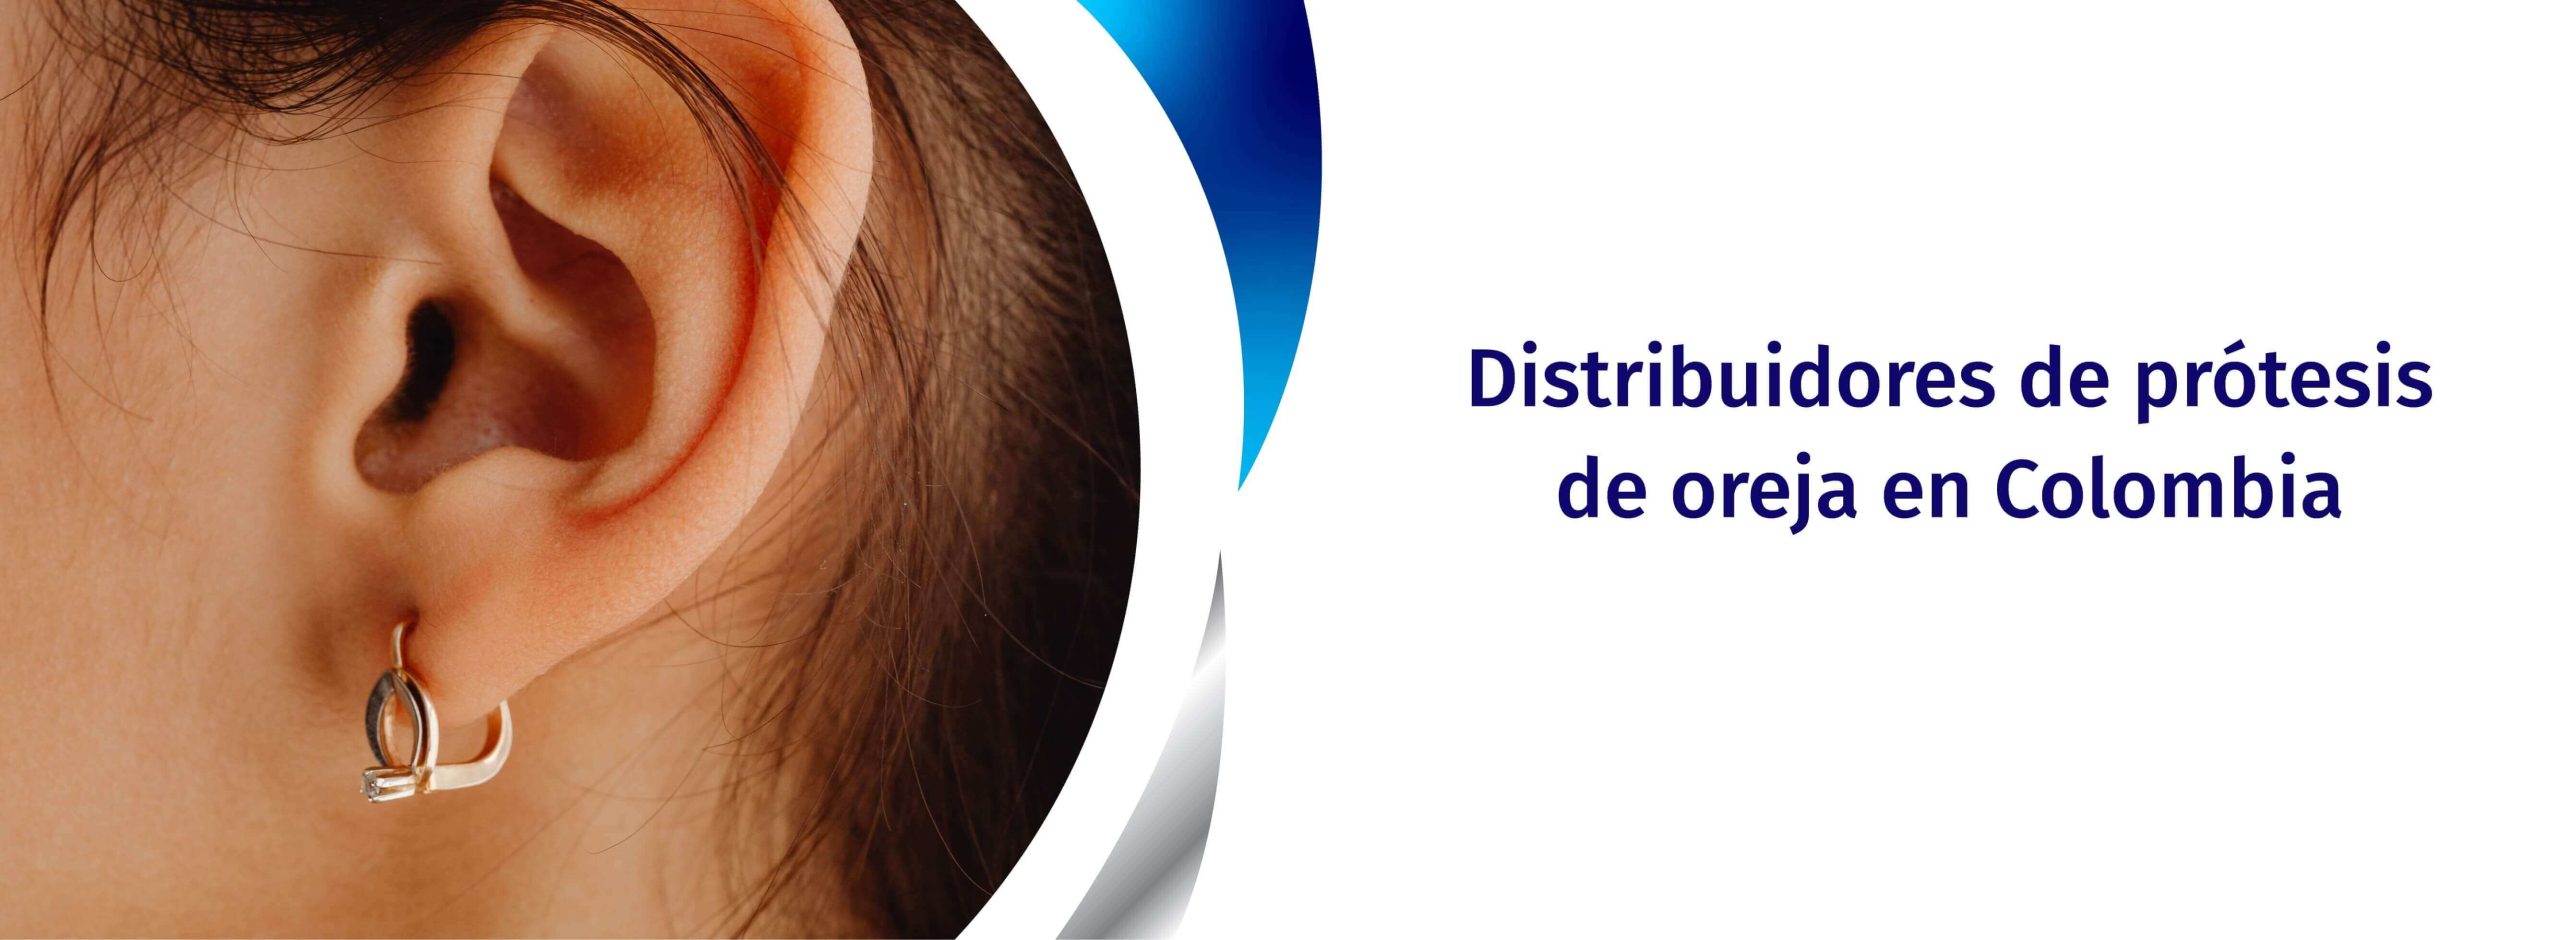 Distribuidores de Prótesis de oreja en Colombia